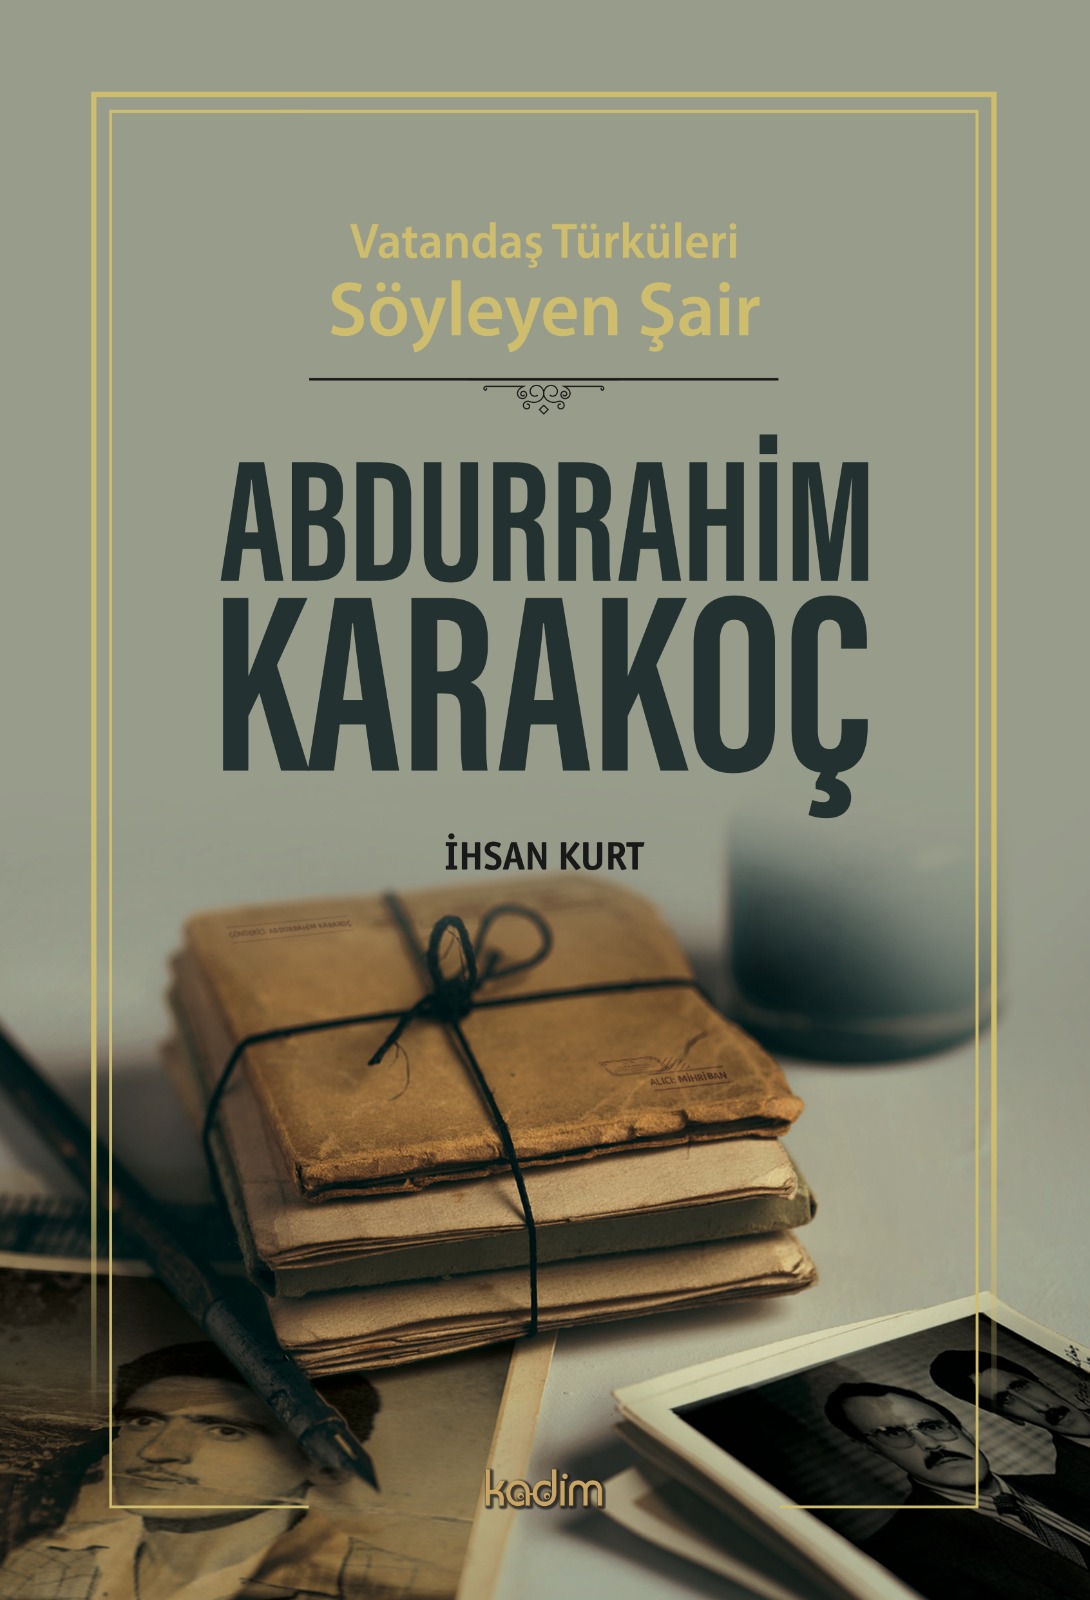 Vatandaş Türküleri Söyleyen Şair ABDURRAHIM KARAKOÇ